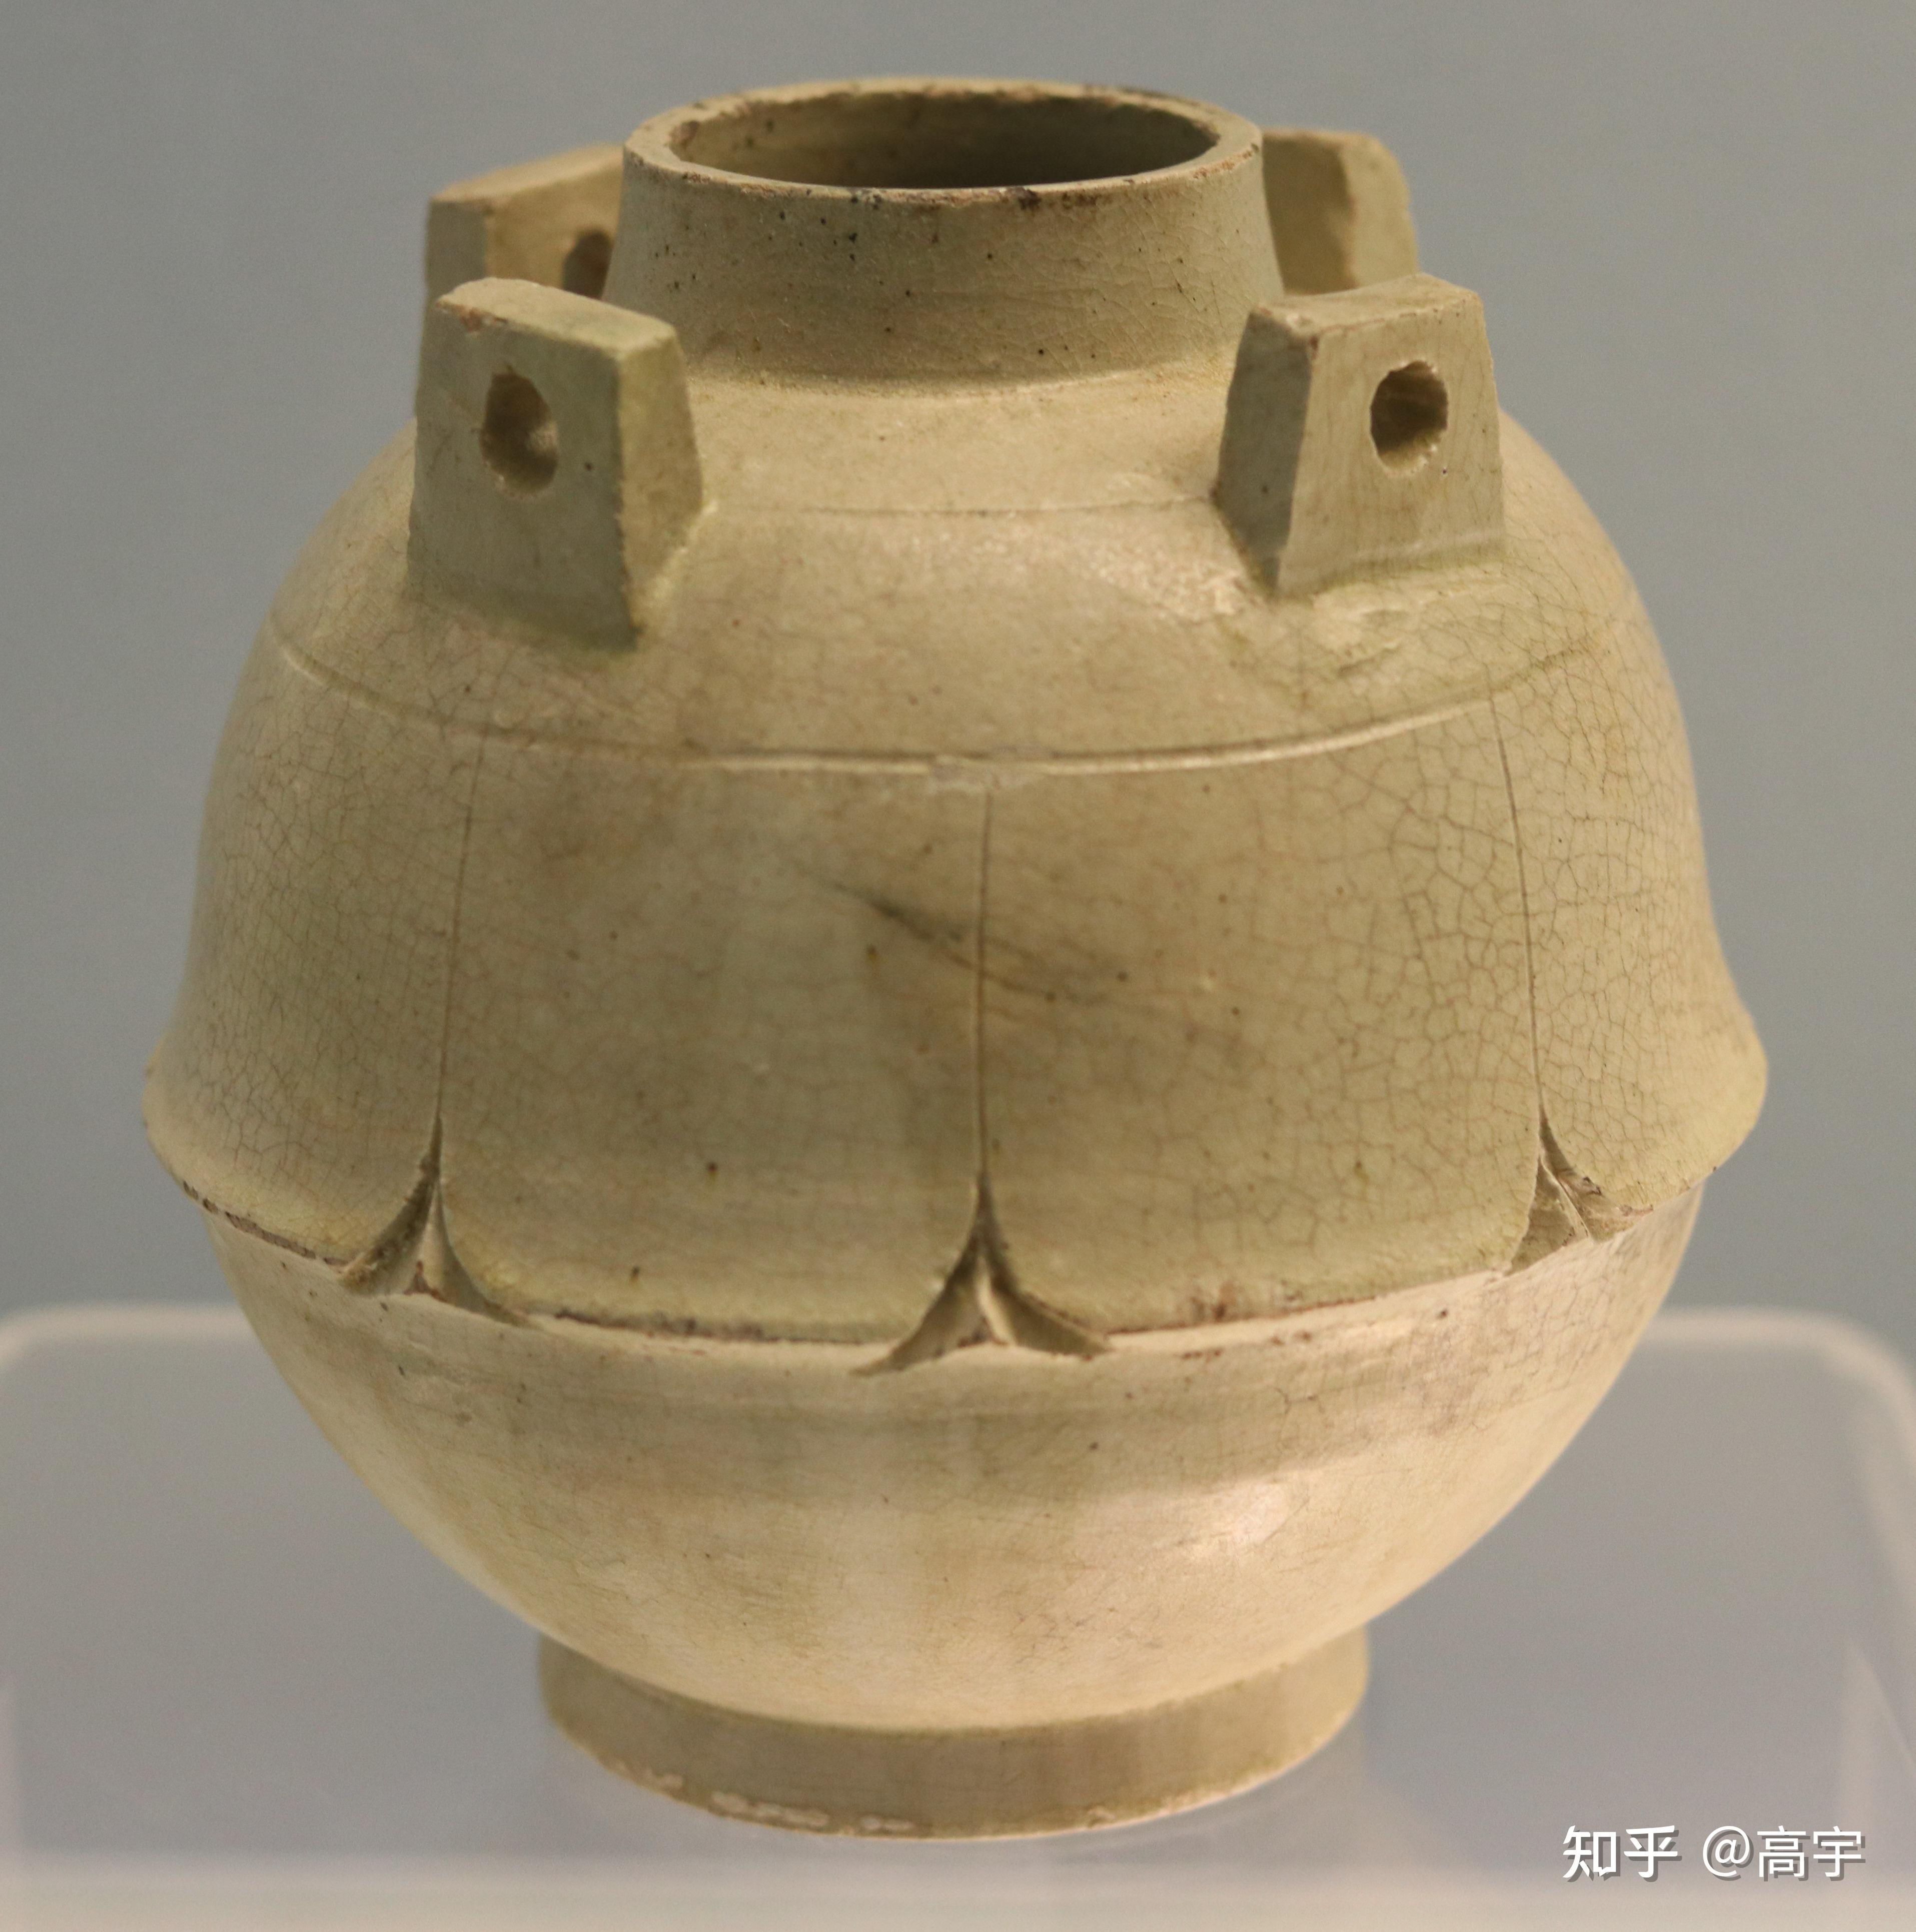 青瓷双系罐(西晋)-宁波地域考古成果图集-图片